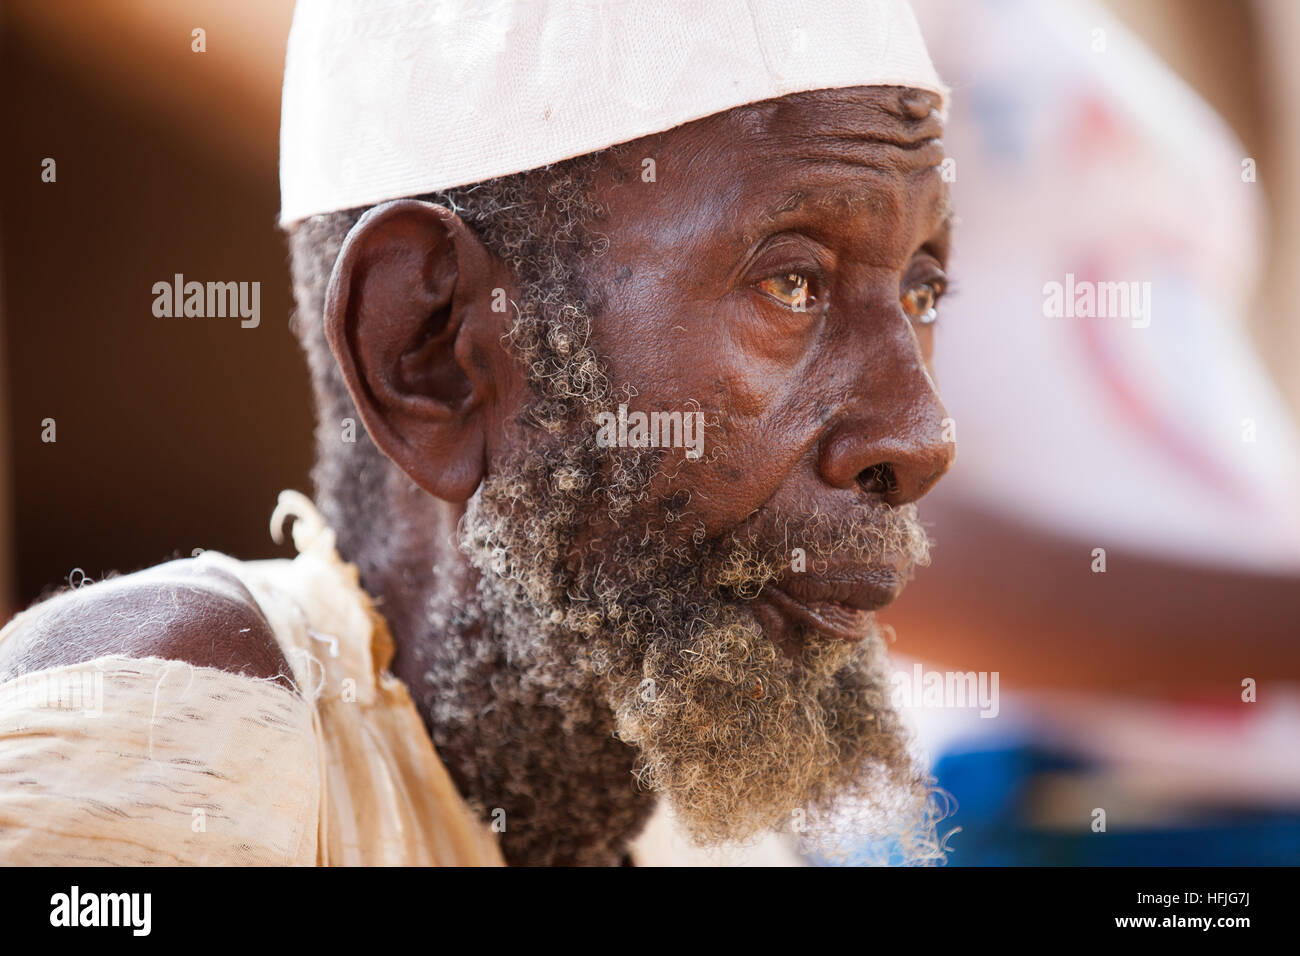 Koumban village, Guinea; Madjan Condé, 102 años en una visita a Soryba Condé. Él dice que el secreto para una vida larga es saber perdonar. Foto de stock